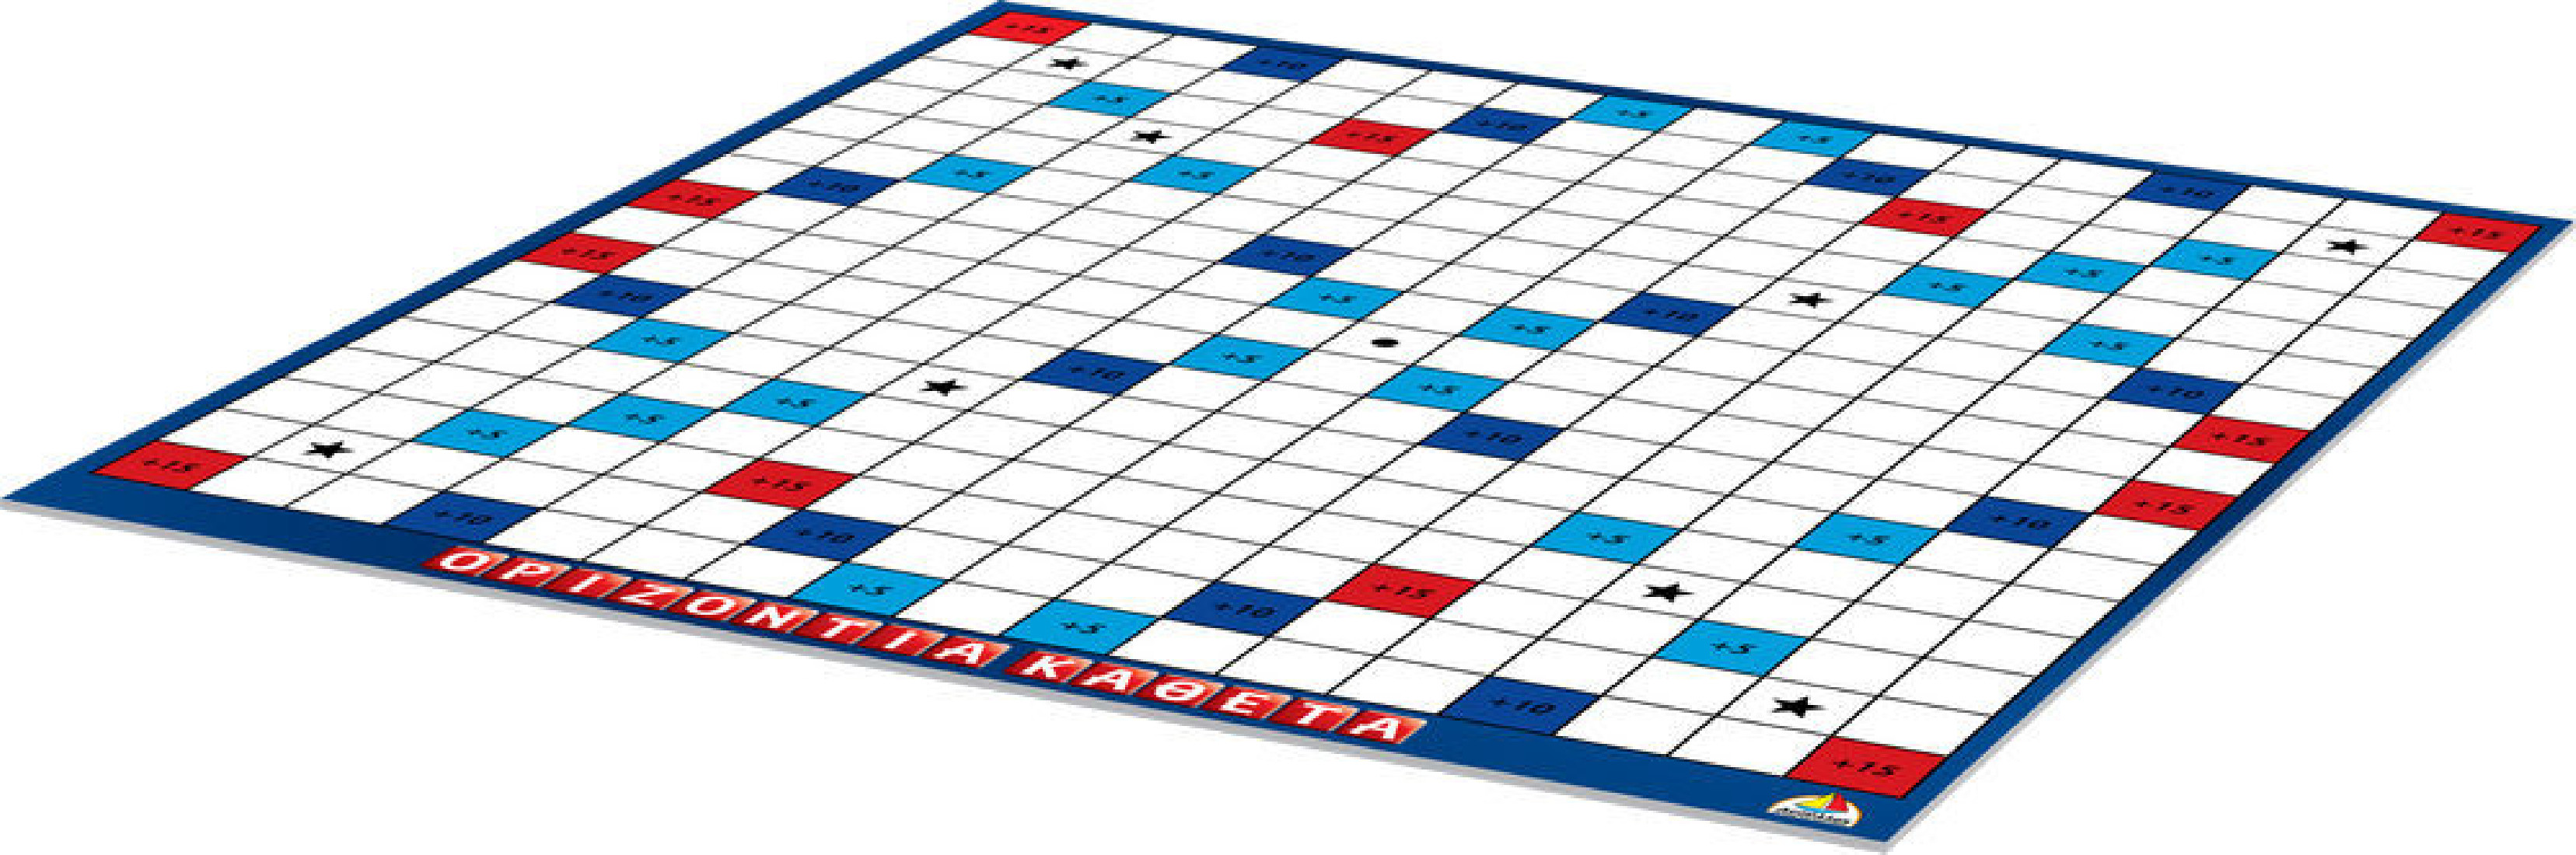 Επιτραπέζιο παιχνίδι Οριζόντια - Κάθετα 100531 Δεσύλλας